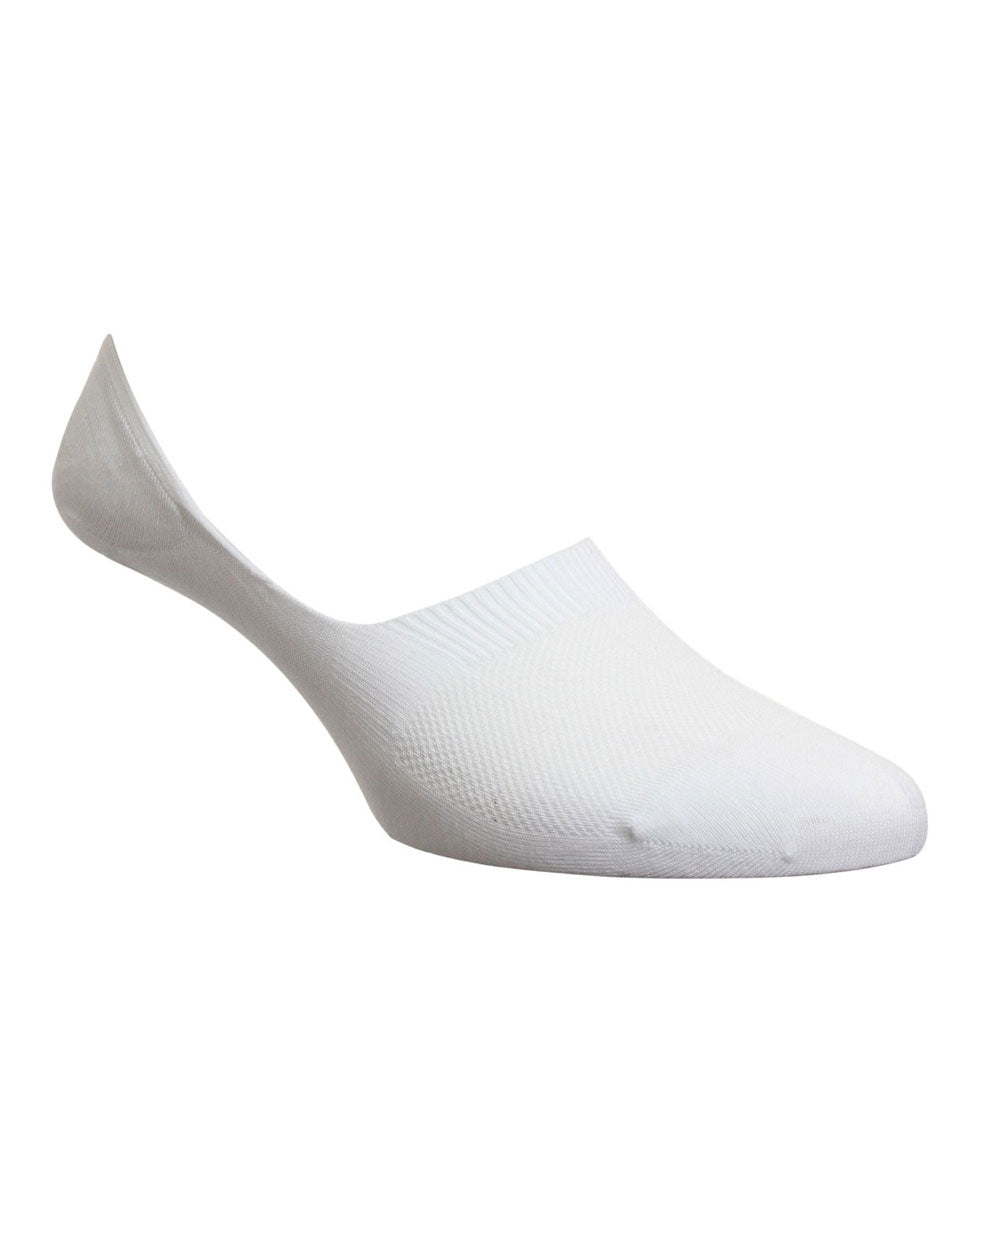 Seville Invisible Socks in White